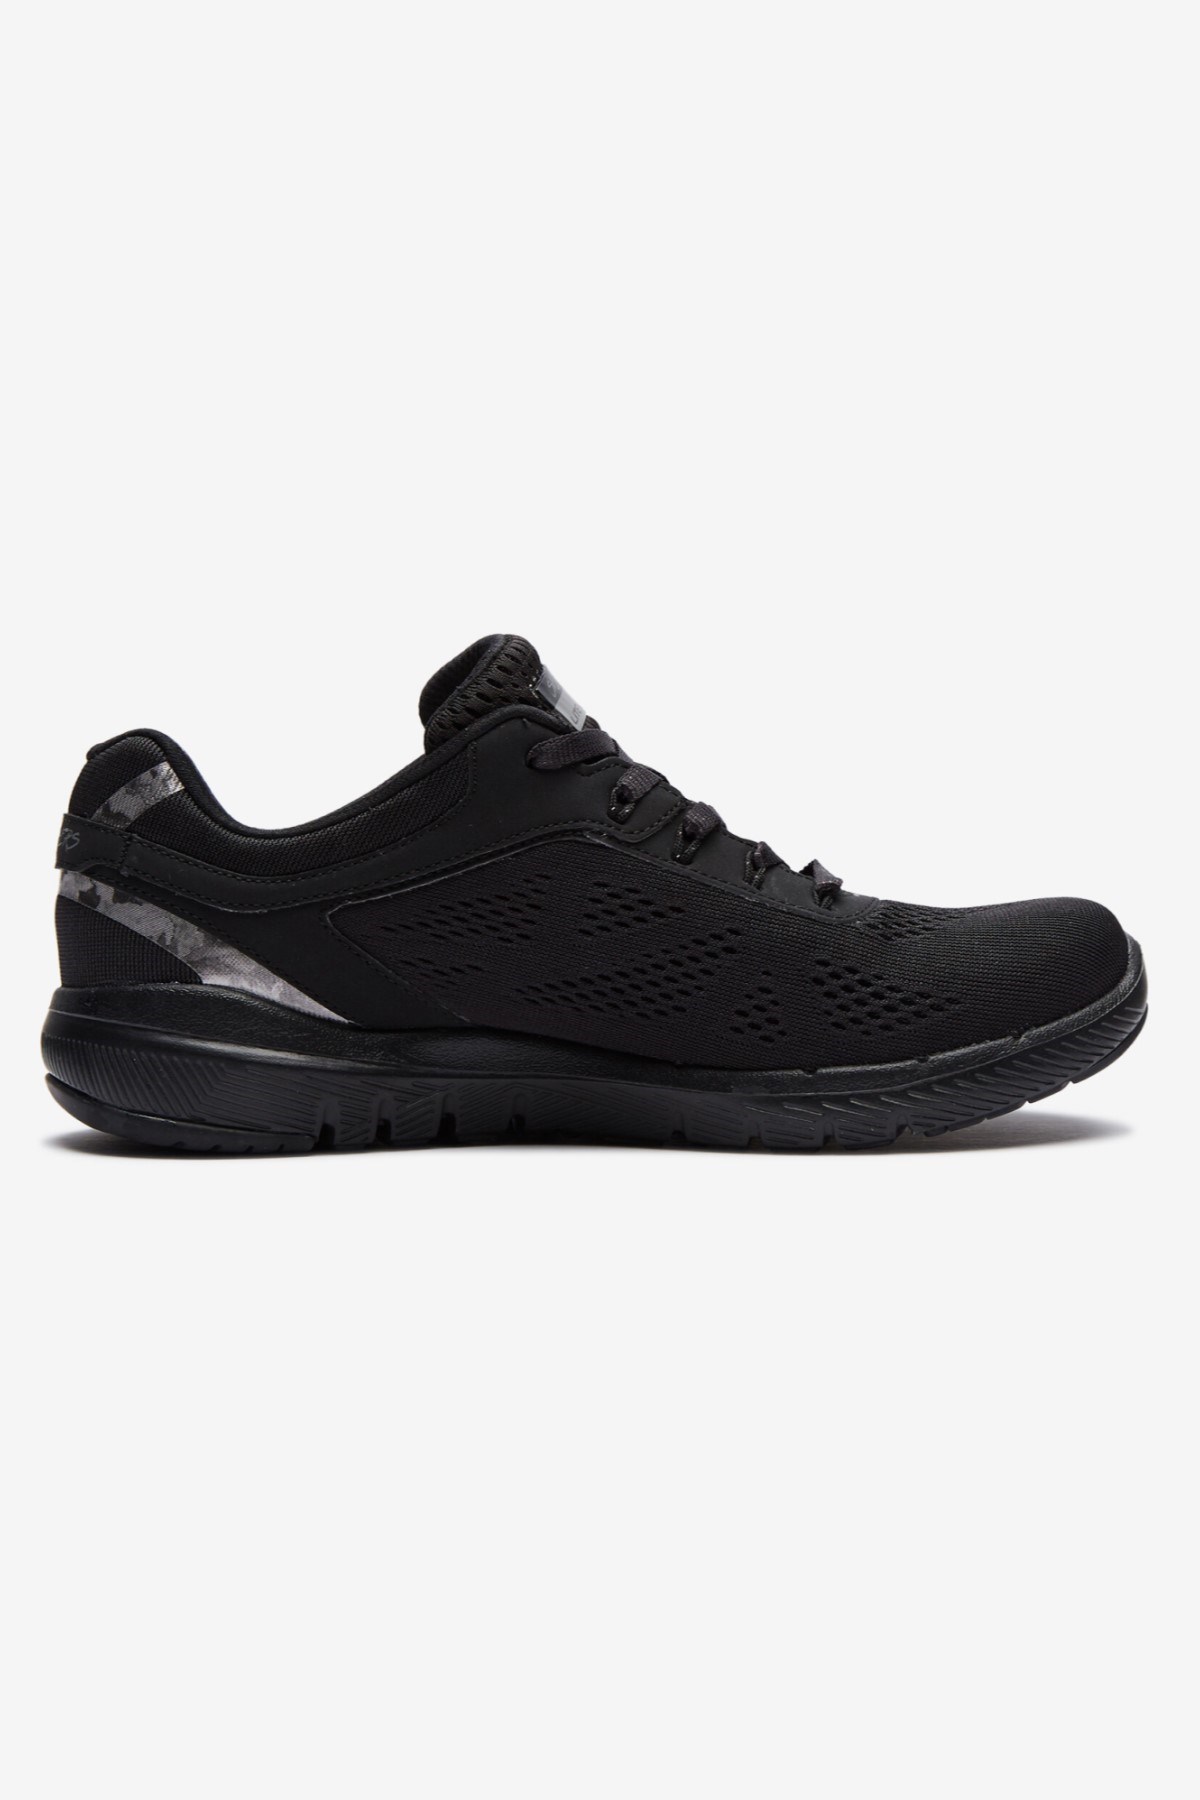 Skechers Kadın Ayakkabı S13059 Siyah